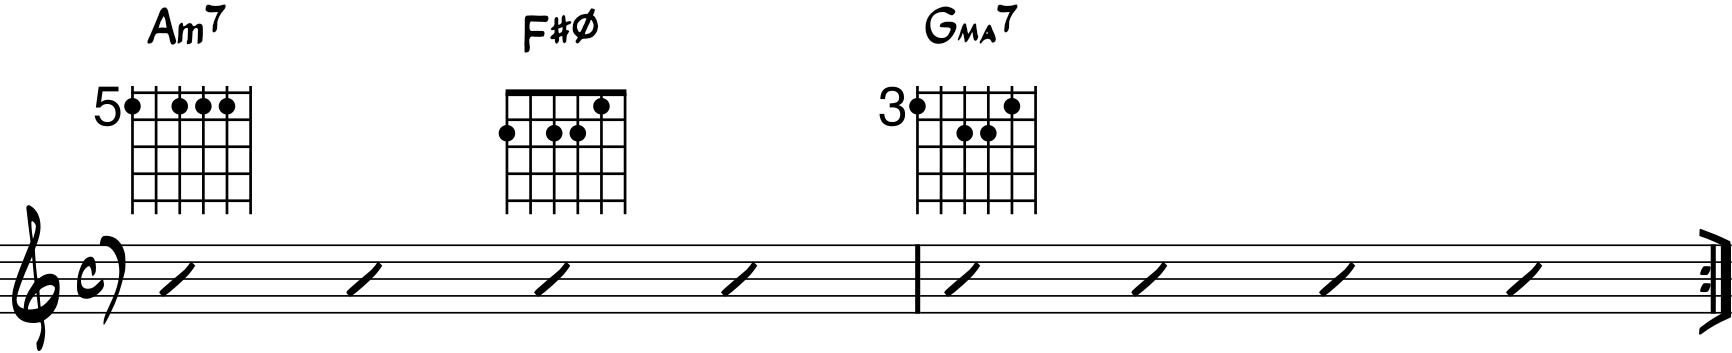 ejemplo de progresión con acorde semidisminuido guitarra